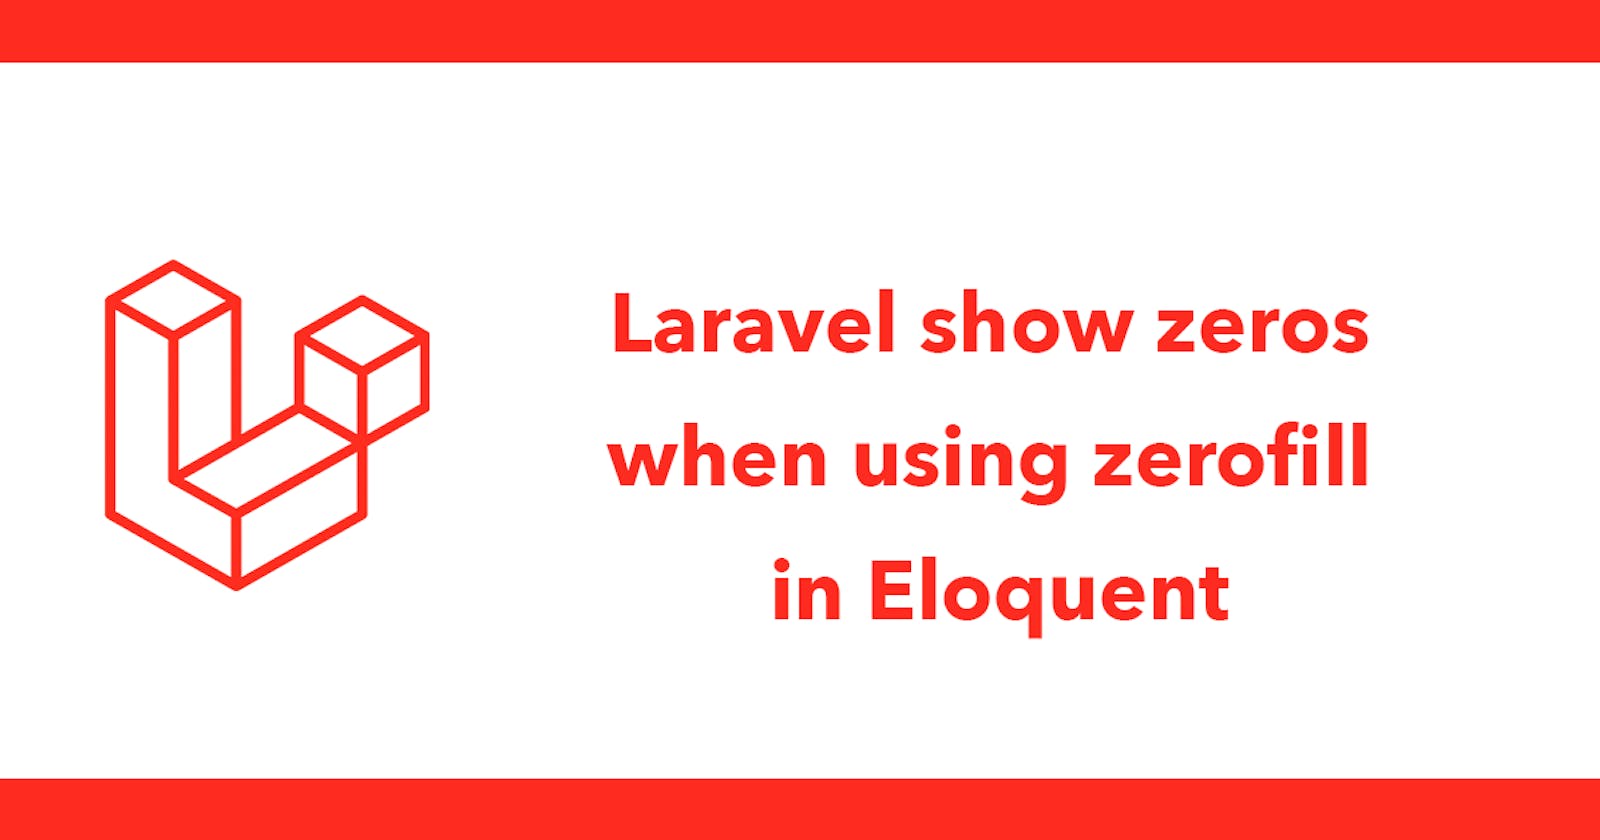 Laravel show zeros when using zerofill in Eloquent